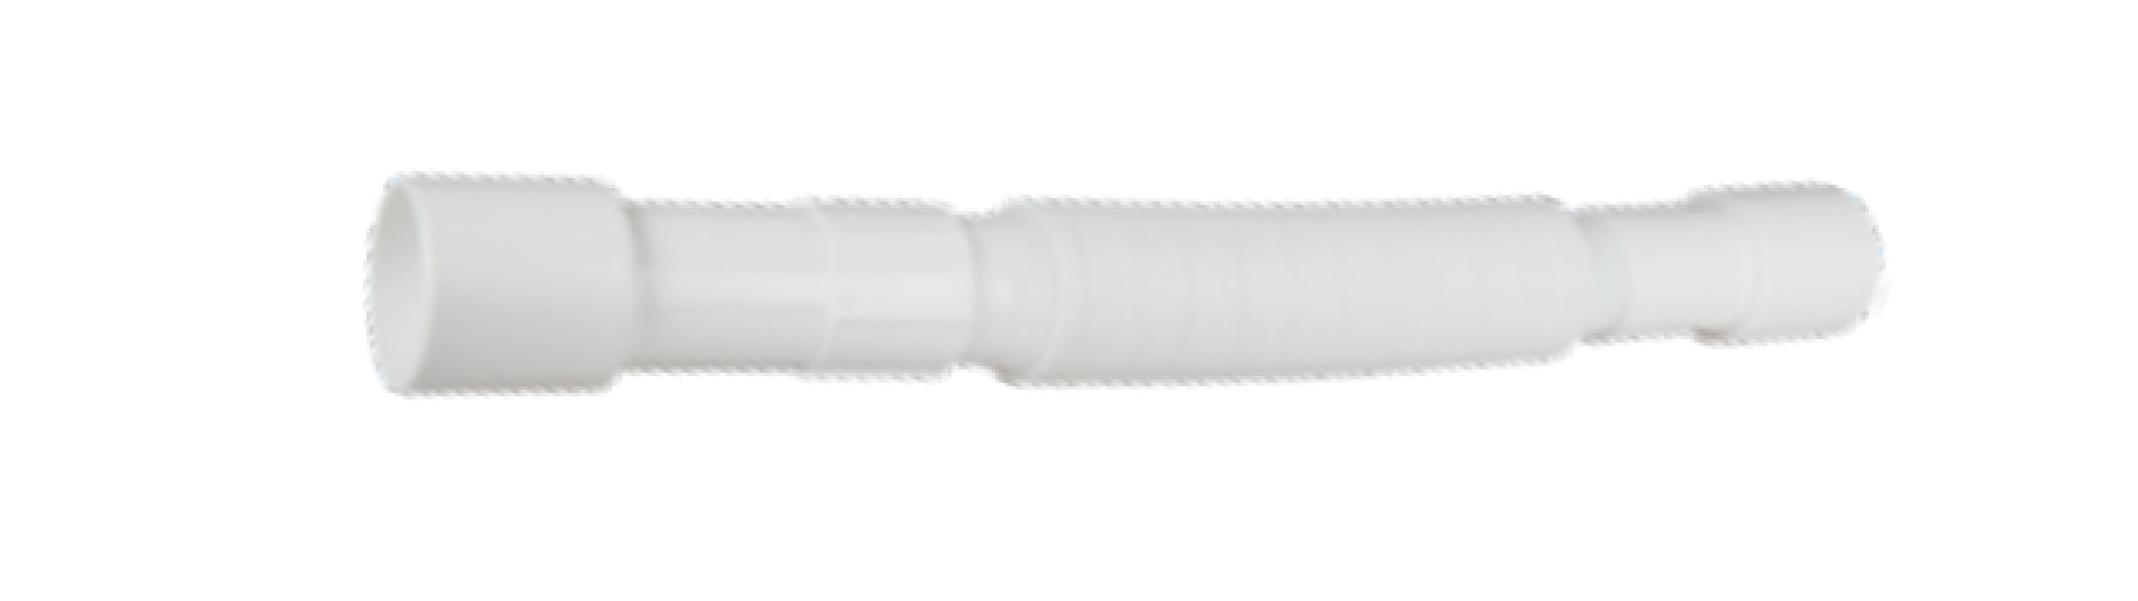 Tubo flessibile universale Idro-Bric diametro 40mm da 40cm bianco - SMK-P0771 40 01